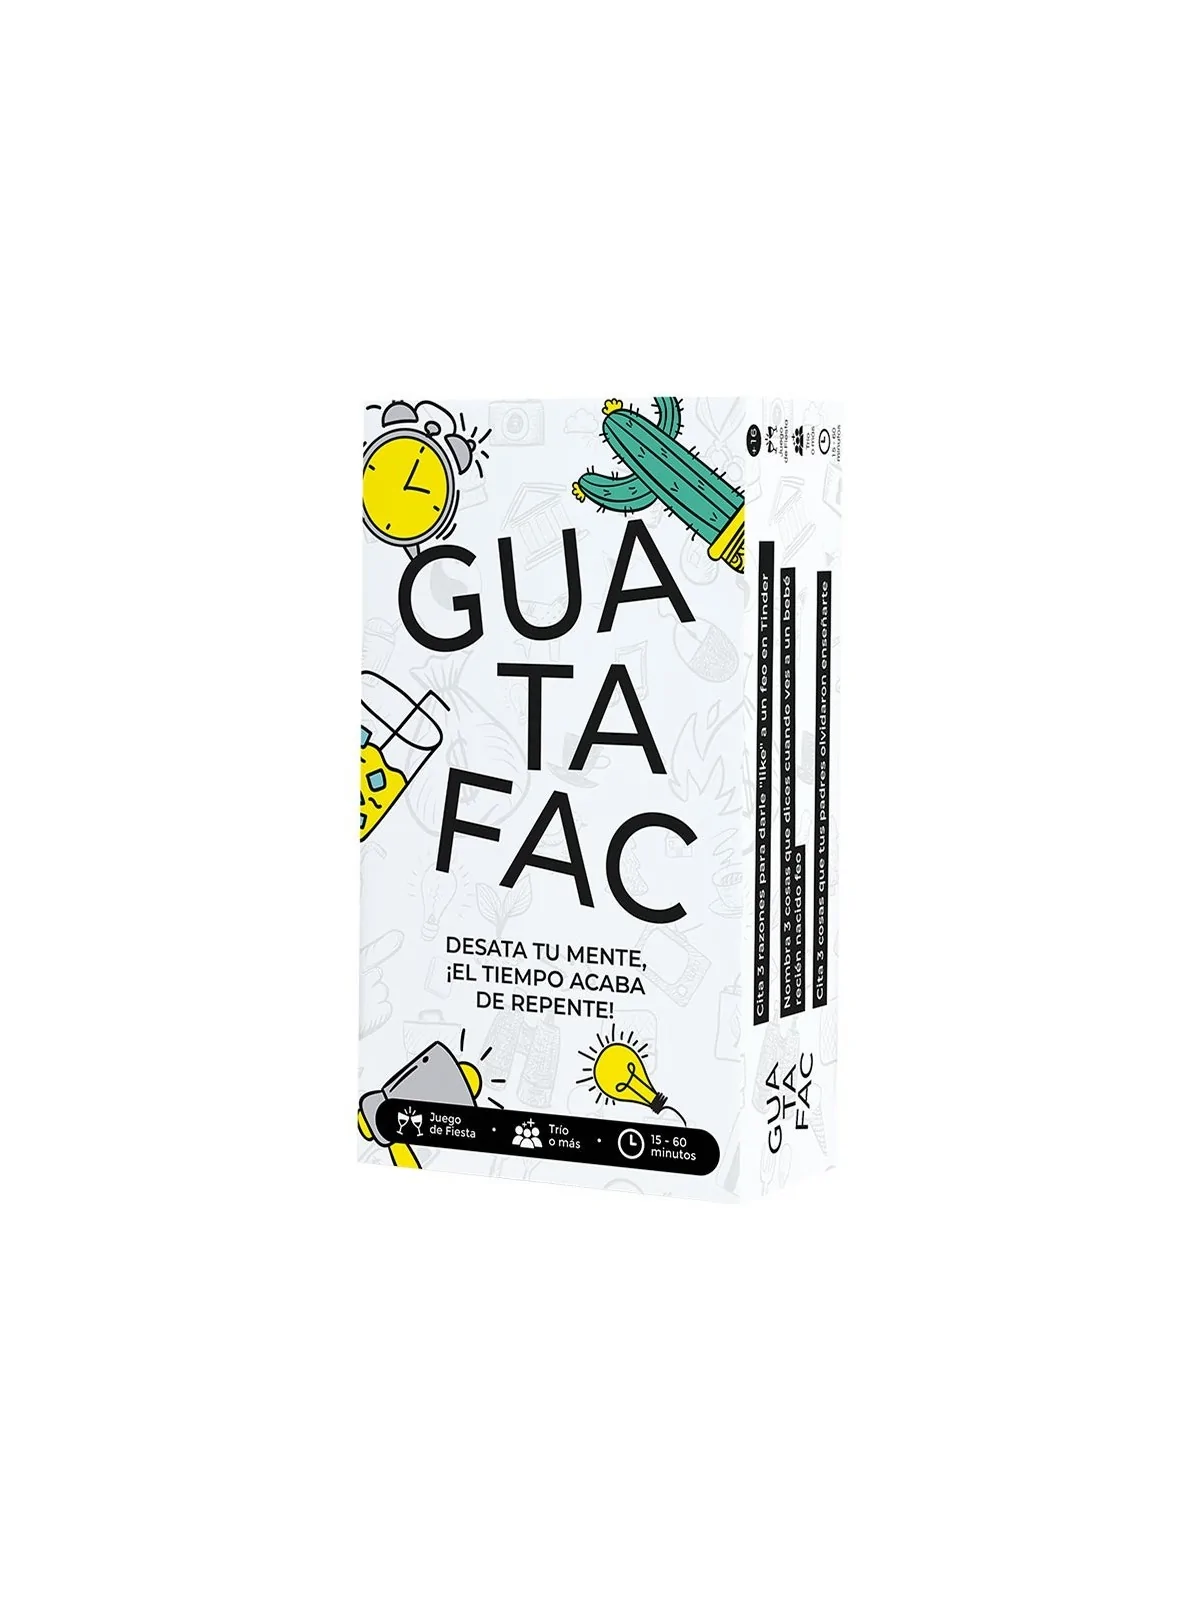 Comprar Guatafac barato al mejor precio 26,95 € de Asmodee